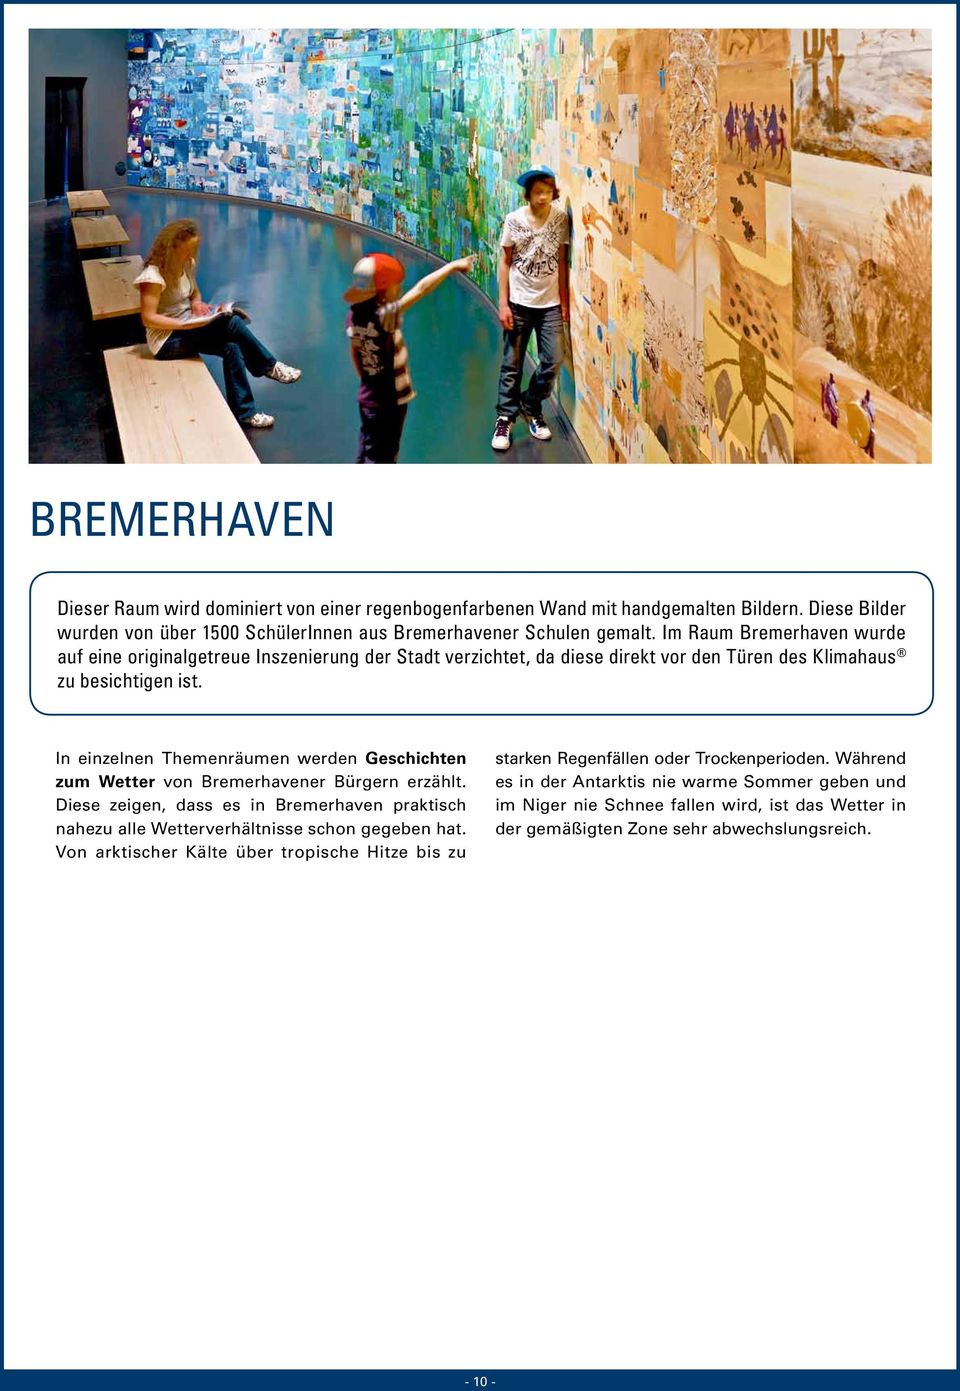 In einzelnen Themenräumen werden Geschichten zum Wetter von Bremerhavener Bürgern erzählt. Diese zeigen, dass es in Bremerhaven praktisch nahezu alle Wetterverhältnisse schon gegeben hat.